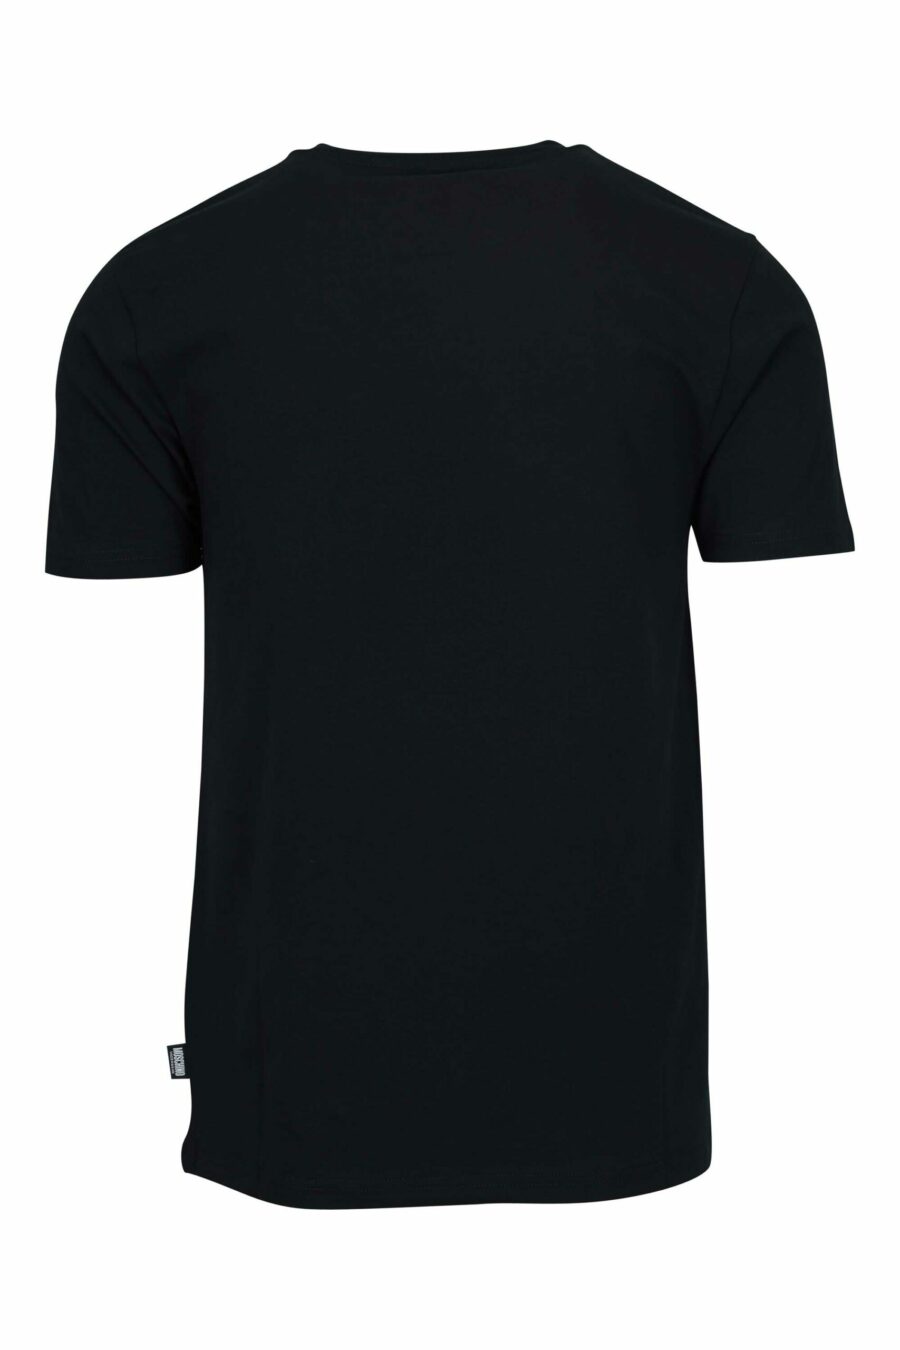 T-shirt noir avec logo mini patch ours "underbear" - 667113605739 1 scaled